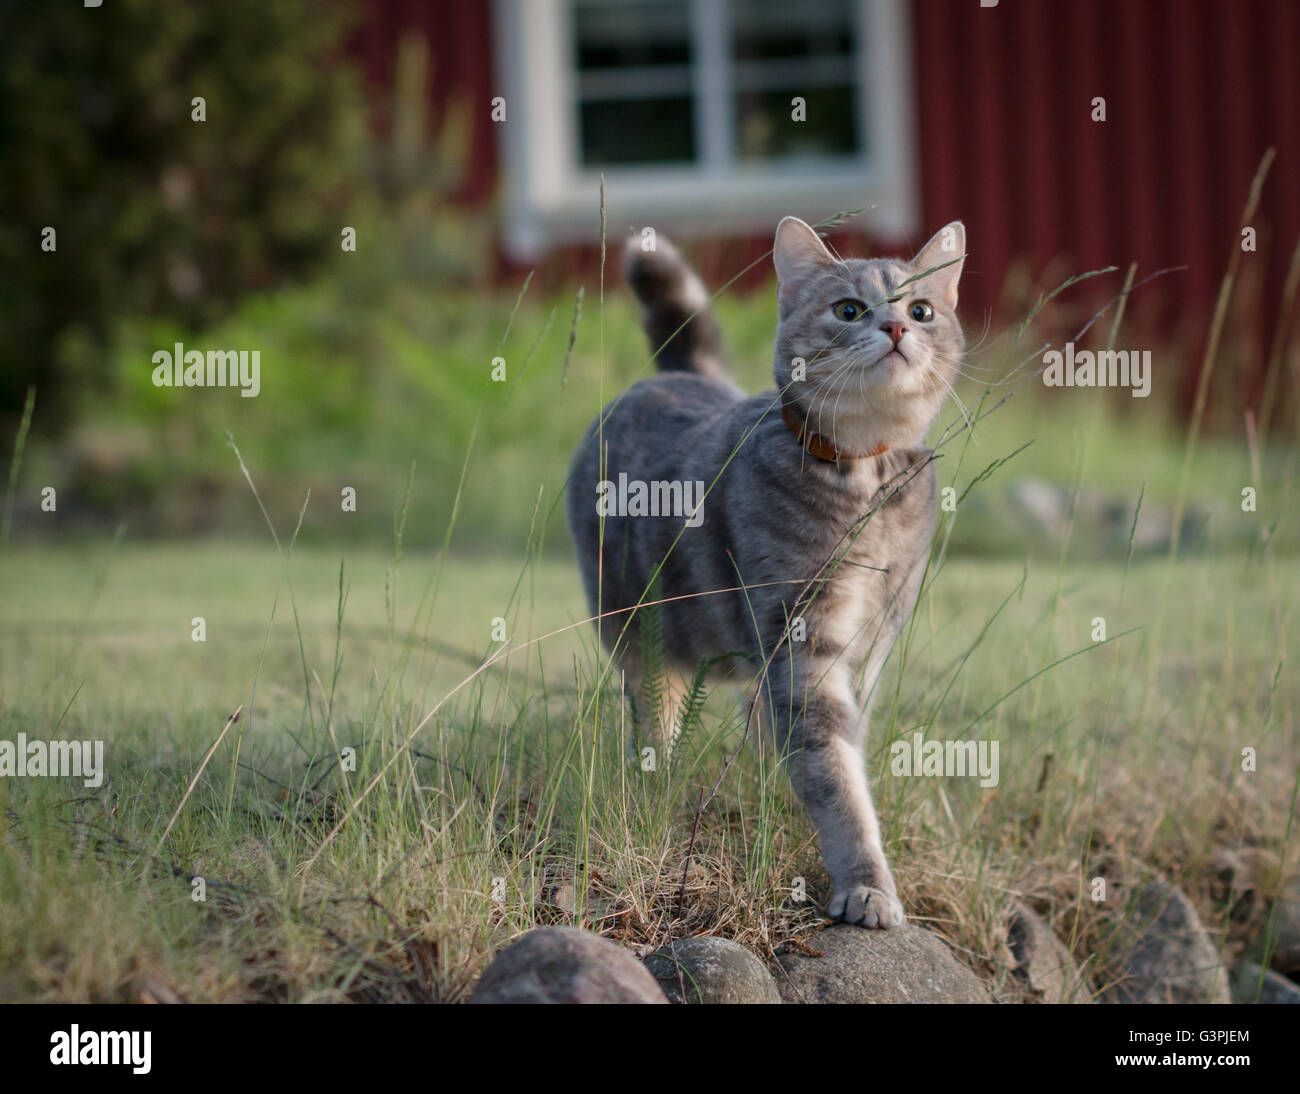 Gato atigrado gris mirando un insecto en una paja de pasto Foto de stock